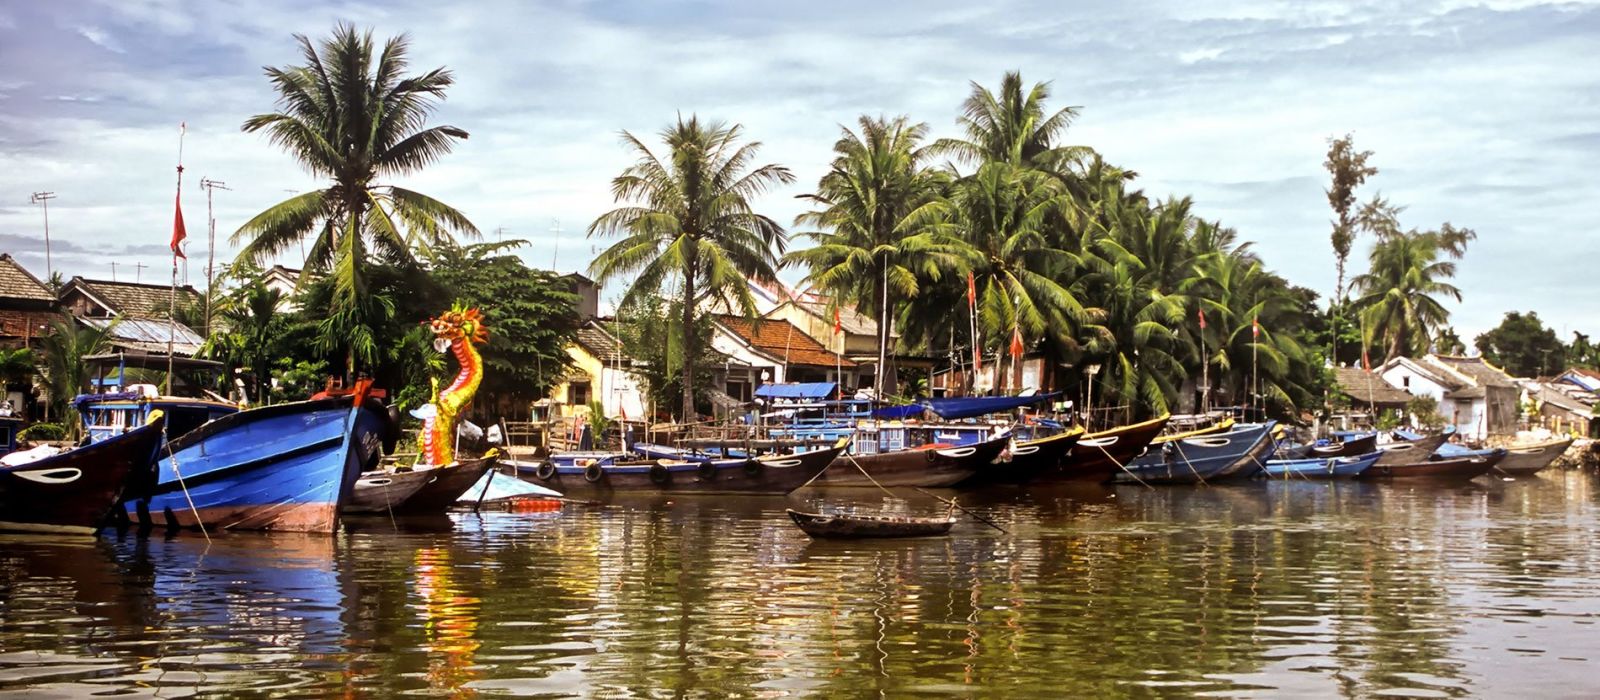 Mekong Delta, Vietnam